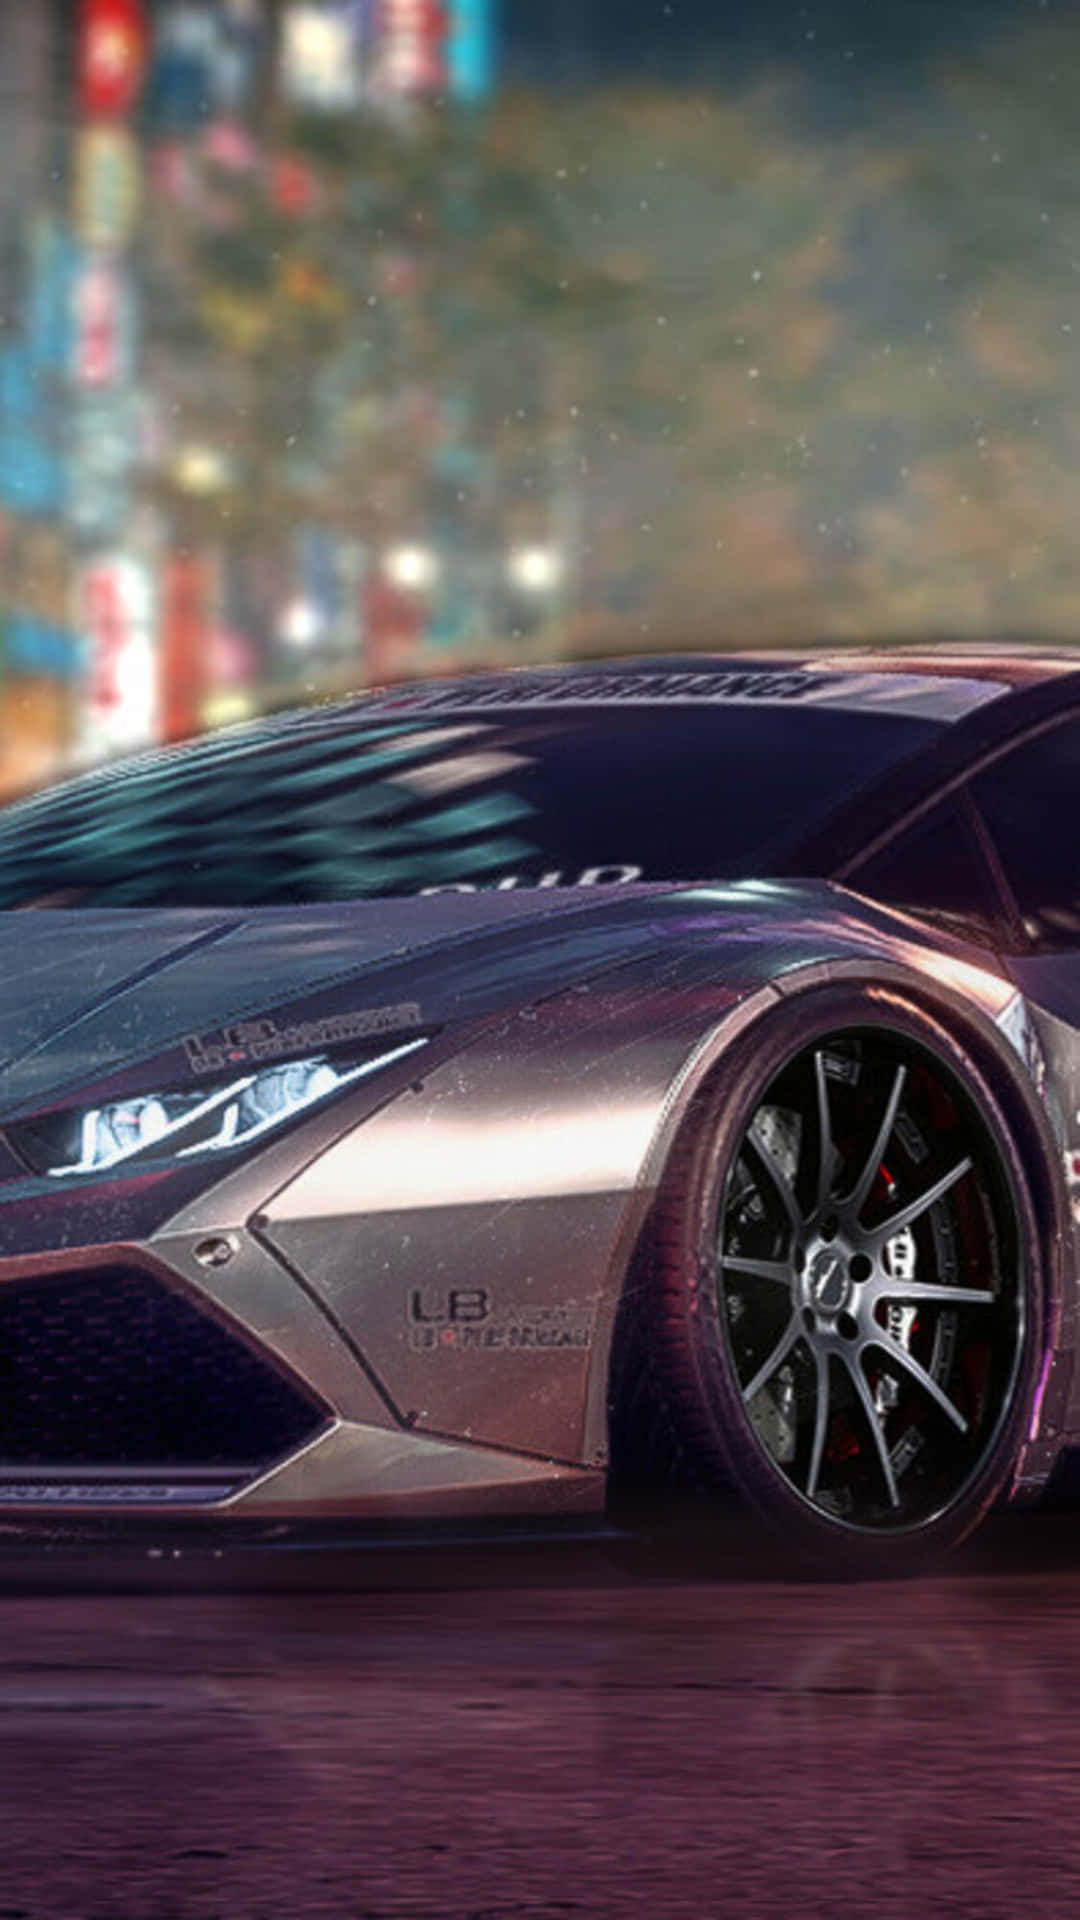 Fondode Pantalla De Need For Speed Payback En Un Iphone Xs, Con Un Lamborghini Huracán Gris.